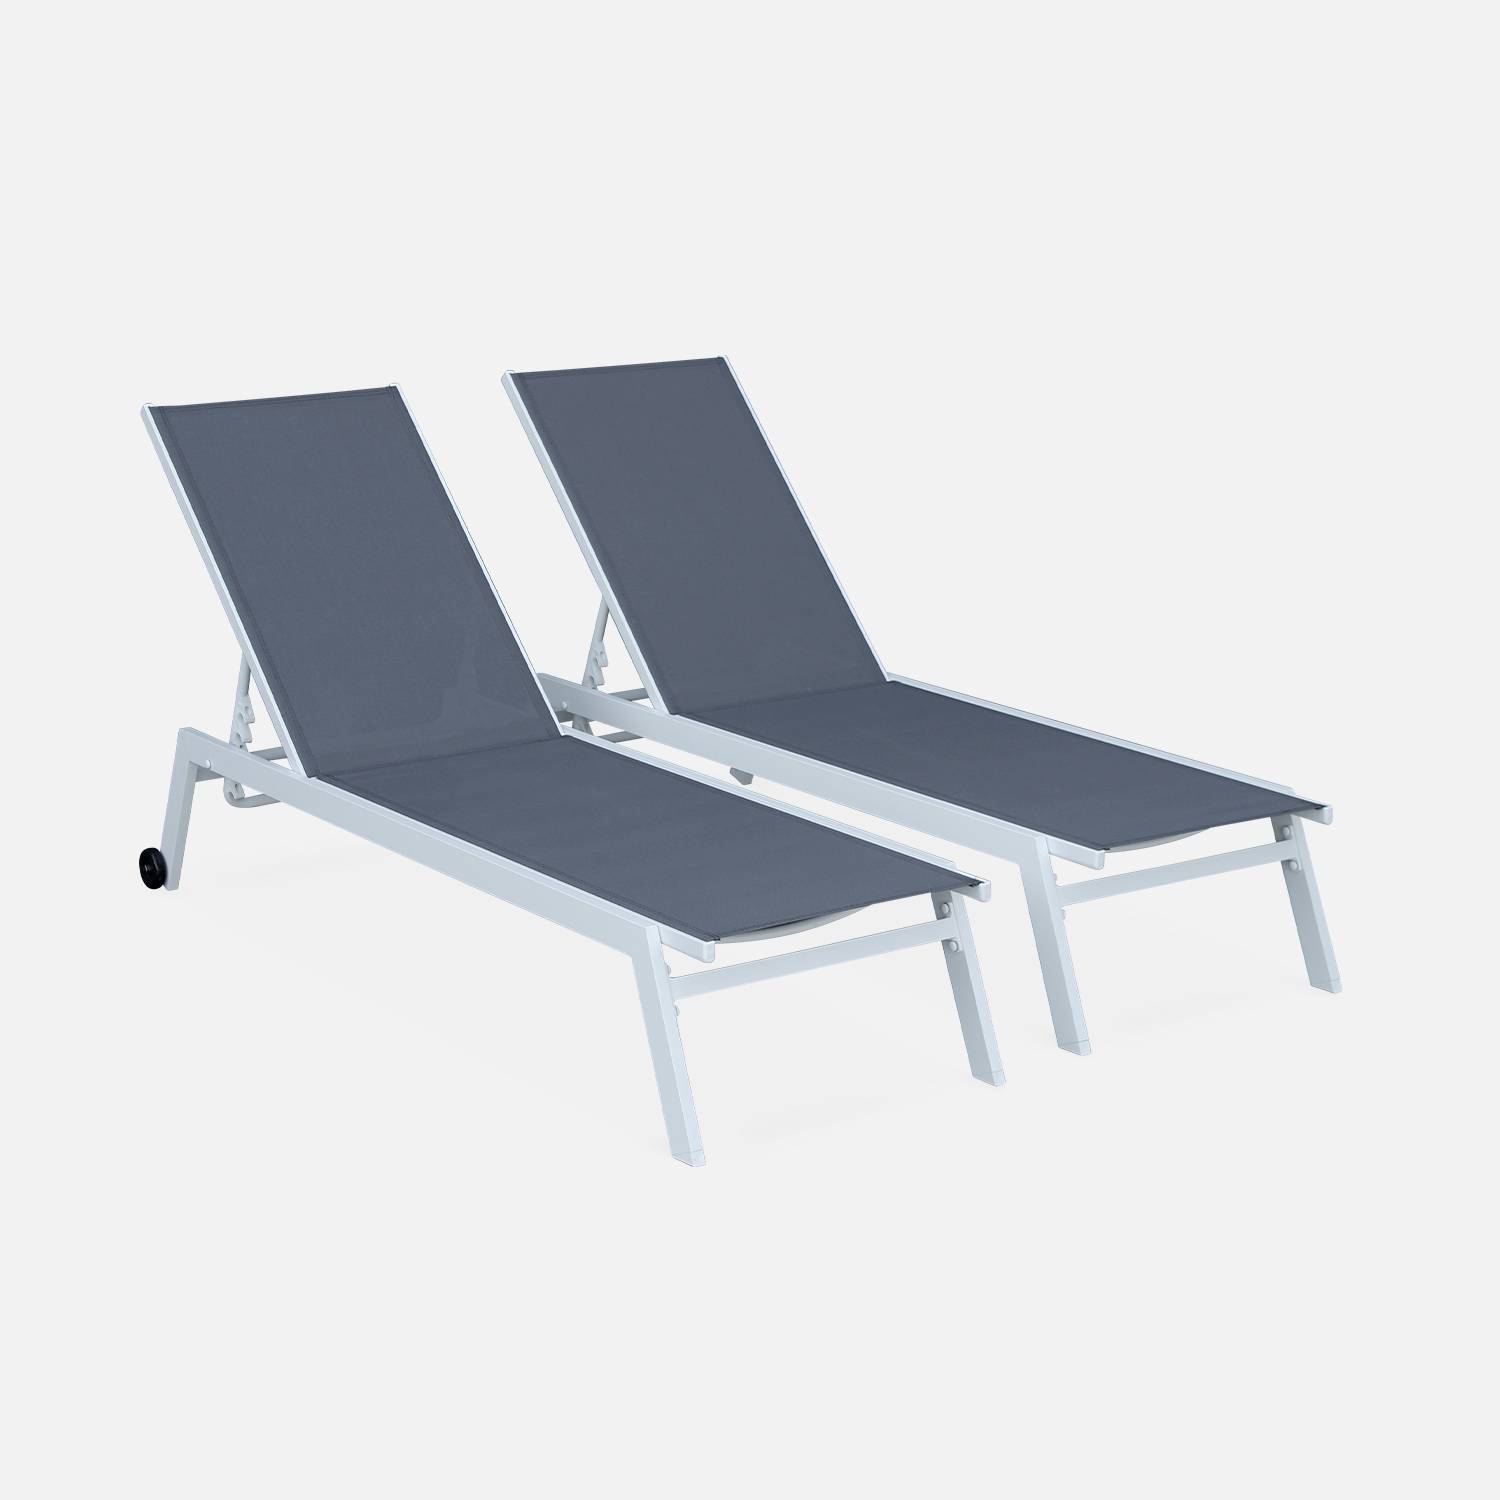 Set van ligstoelen van aluminium en textileen, ligbed multipositioneel met wieltjes | sweeek